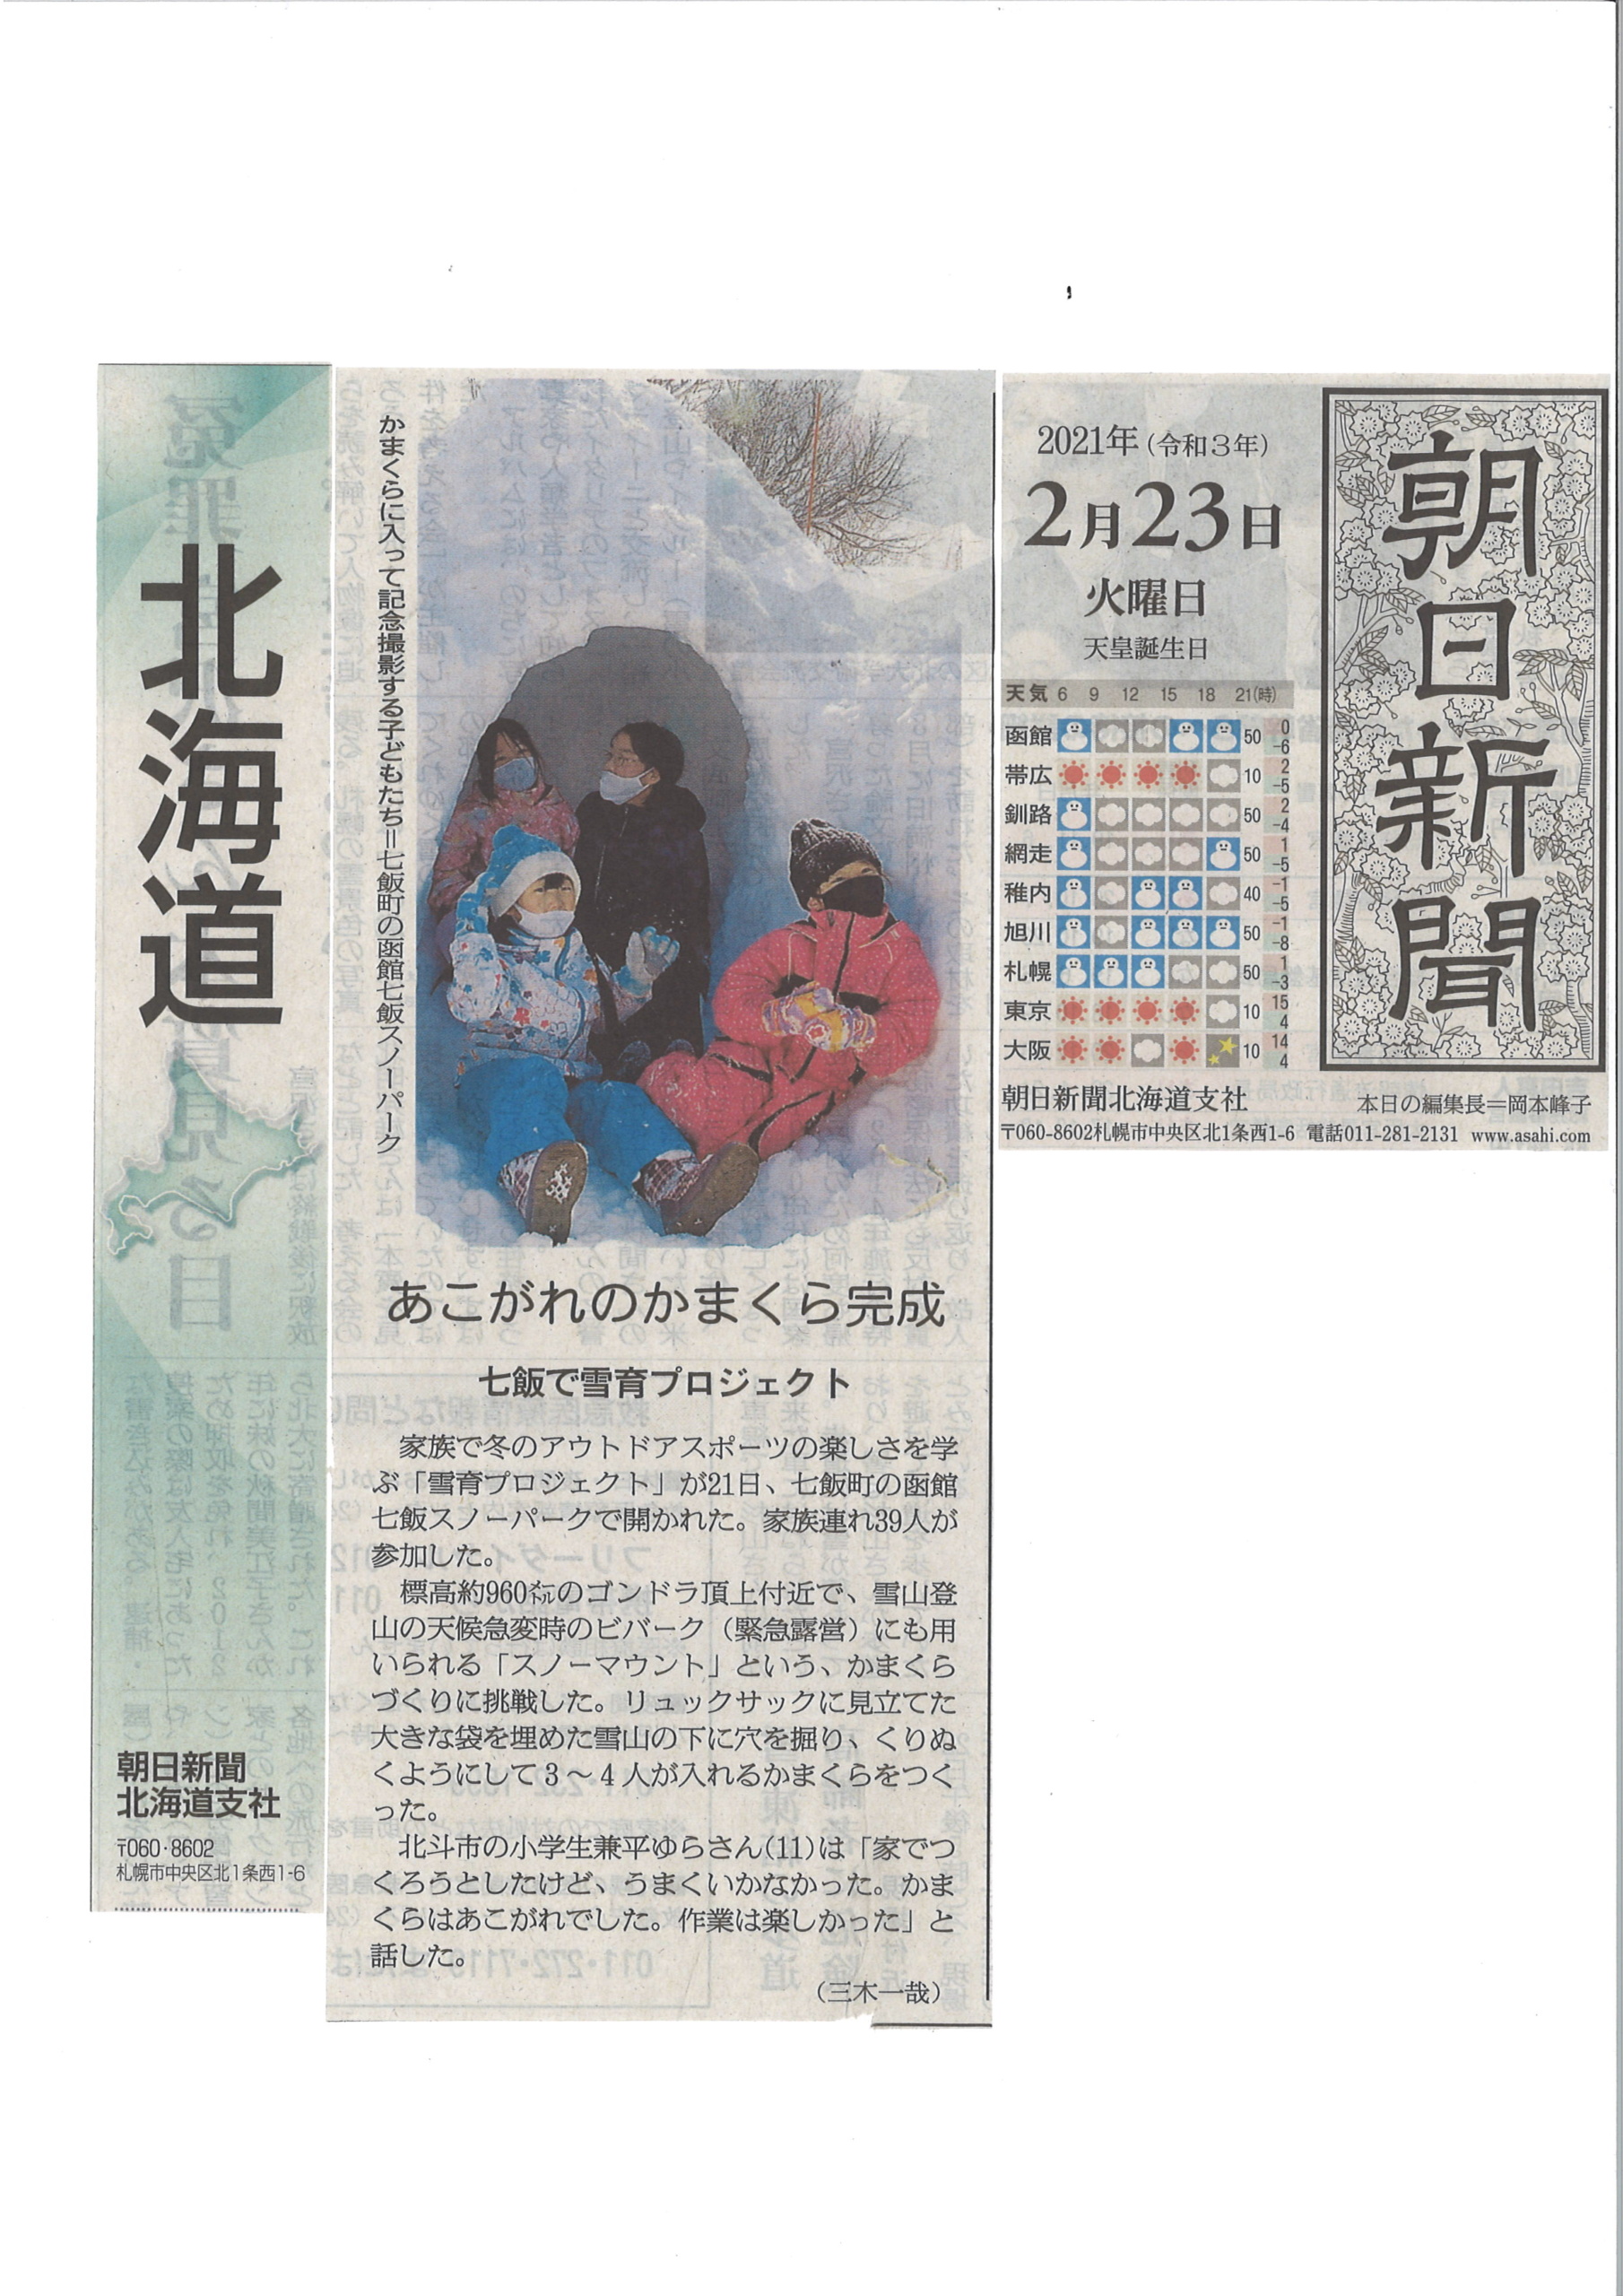 雪育イベント かまくらを作ろう ２月２１日開催しました 函館七飯スノーパーク 公式